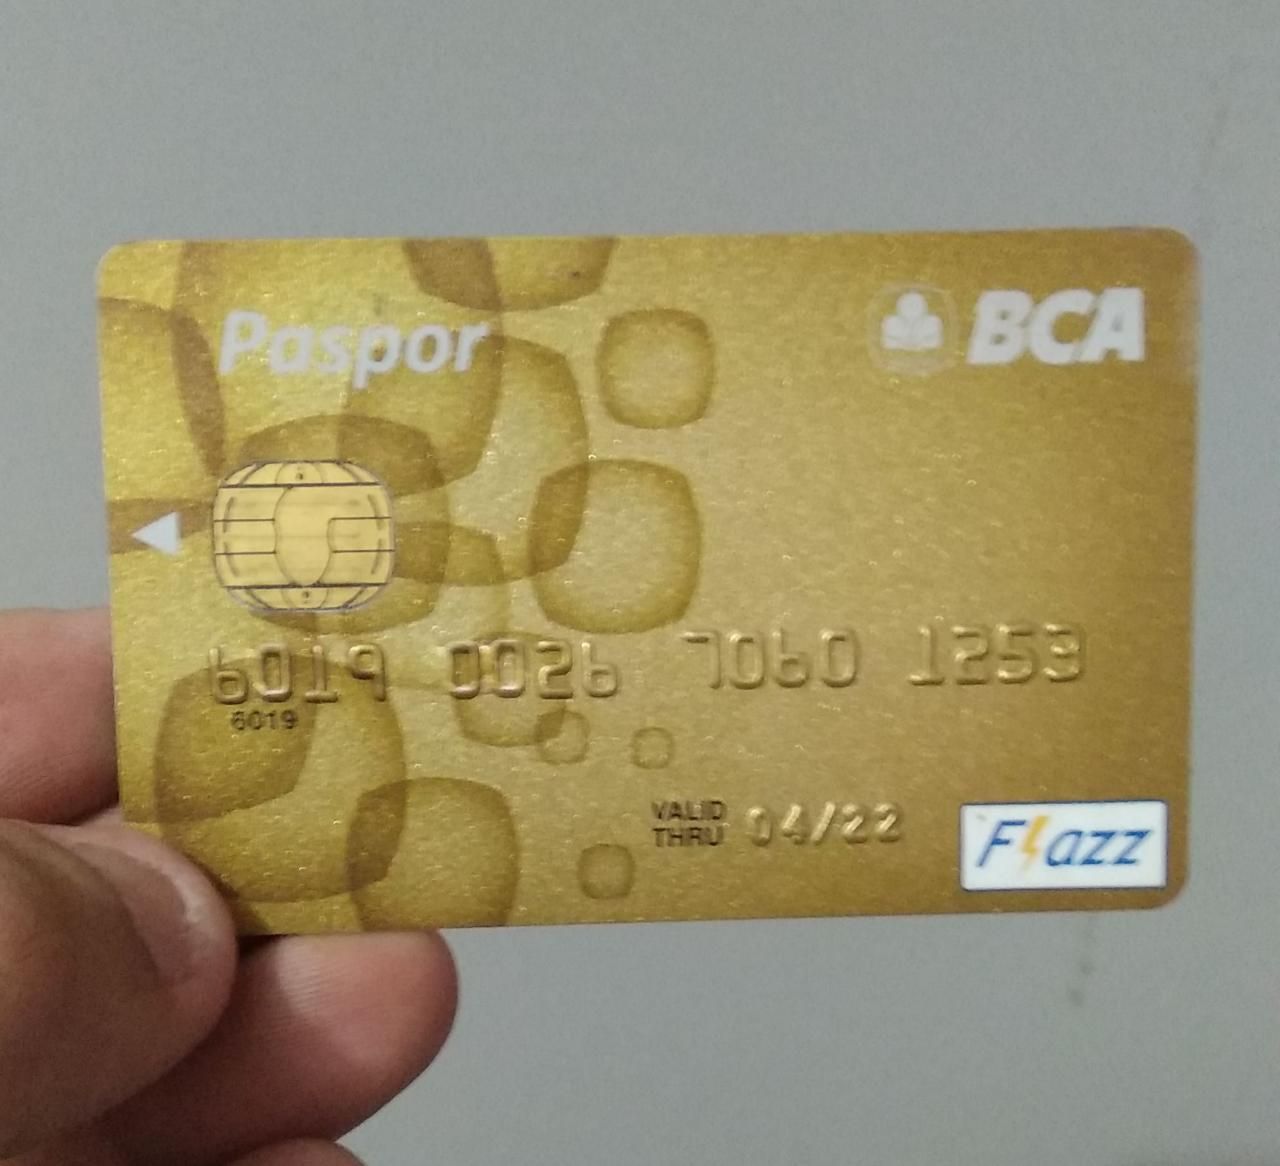 Gambar 1 : Kartu ATM Paspor BCA yang saya gunakan untuk kepeluan pembayaran cashless money   doc.pribadi